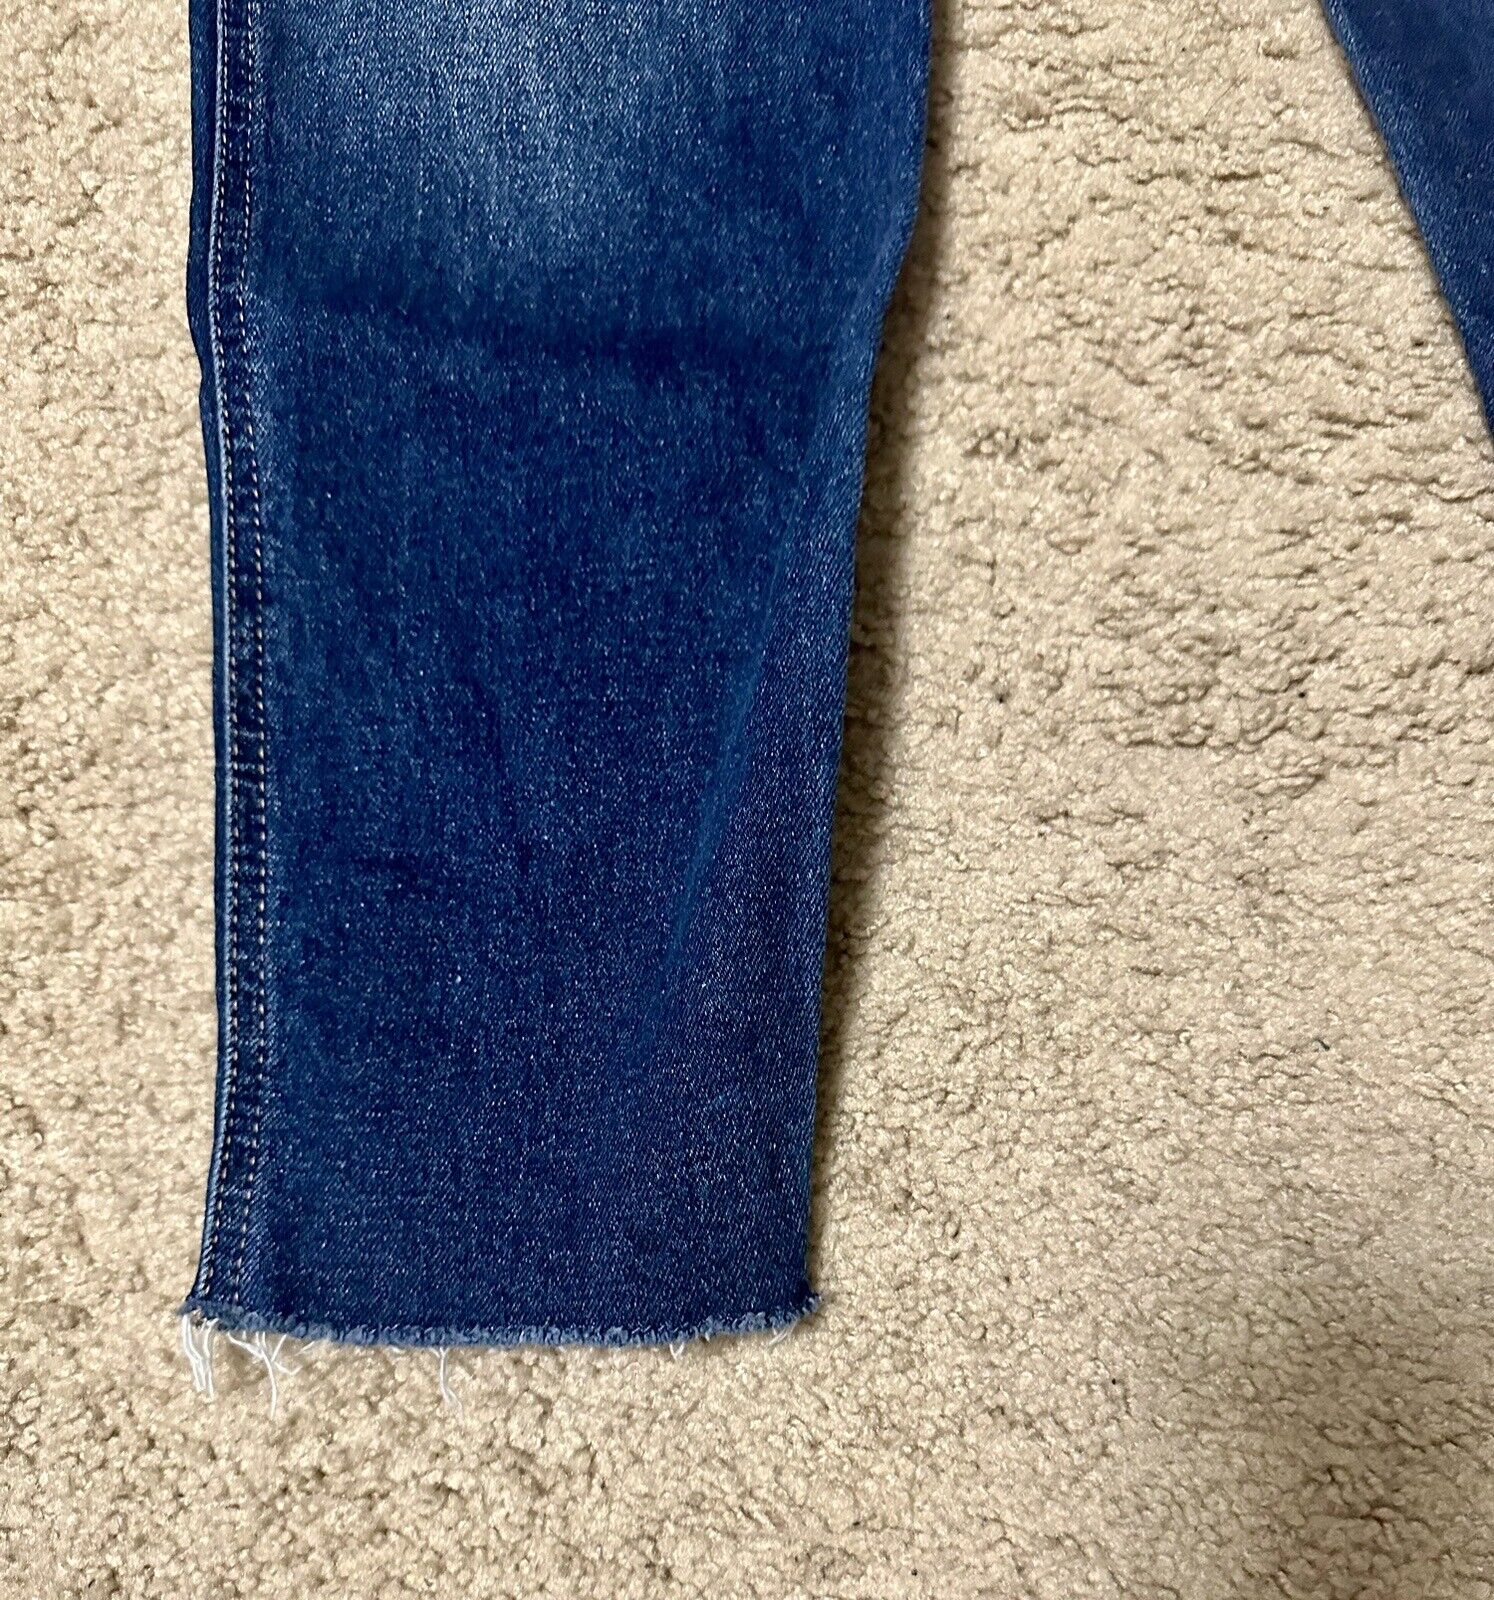 Hollister Mom Jeans Blue Size 5 Regular - image 2